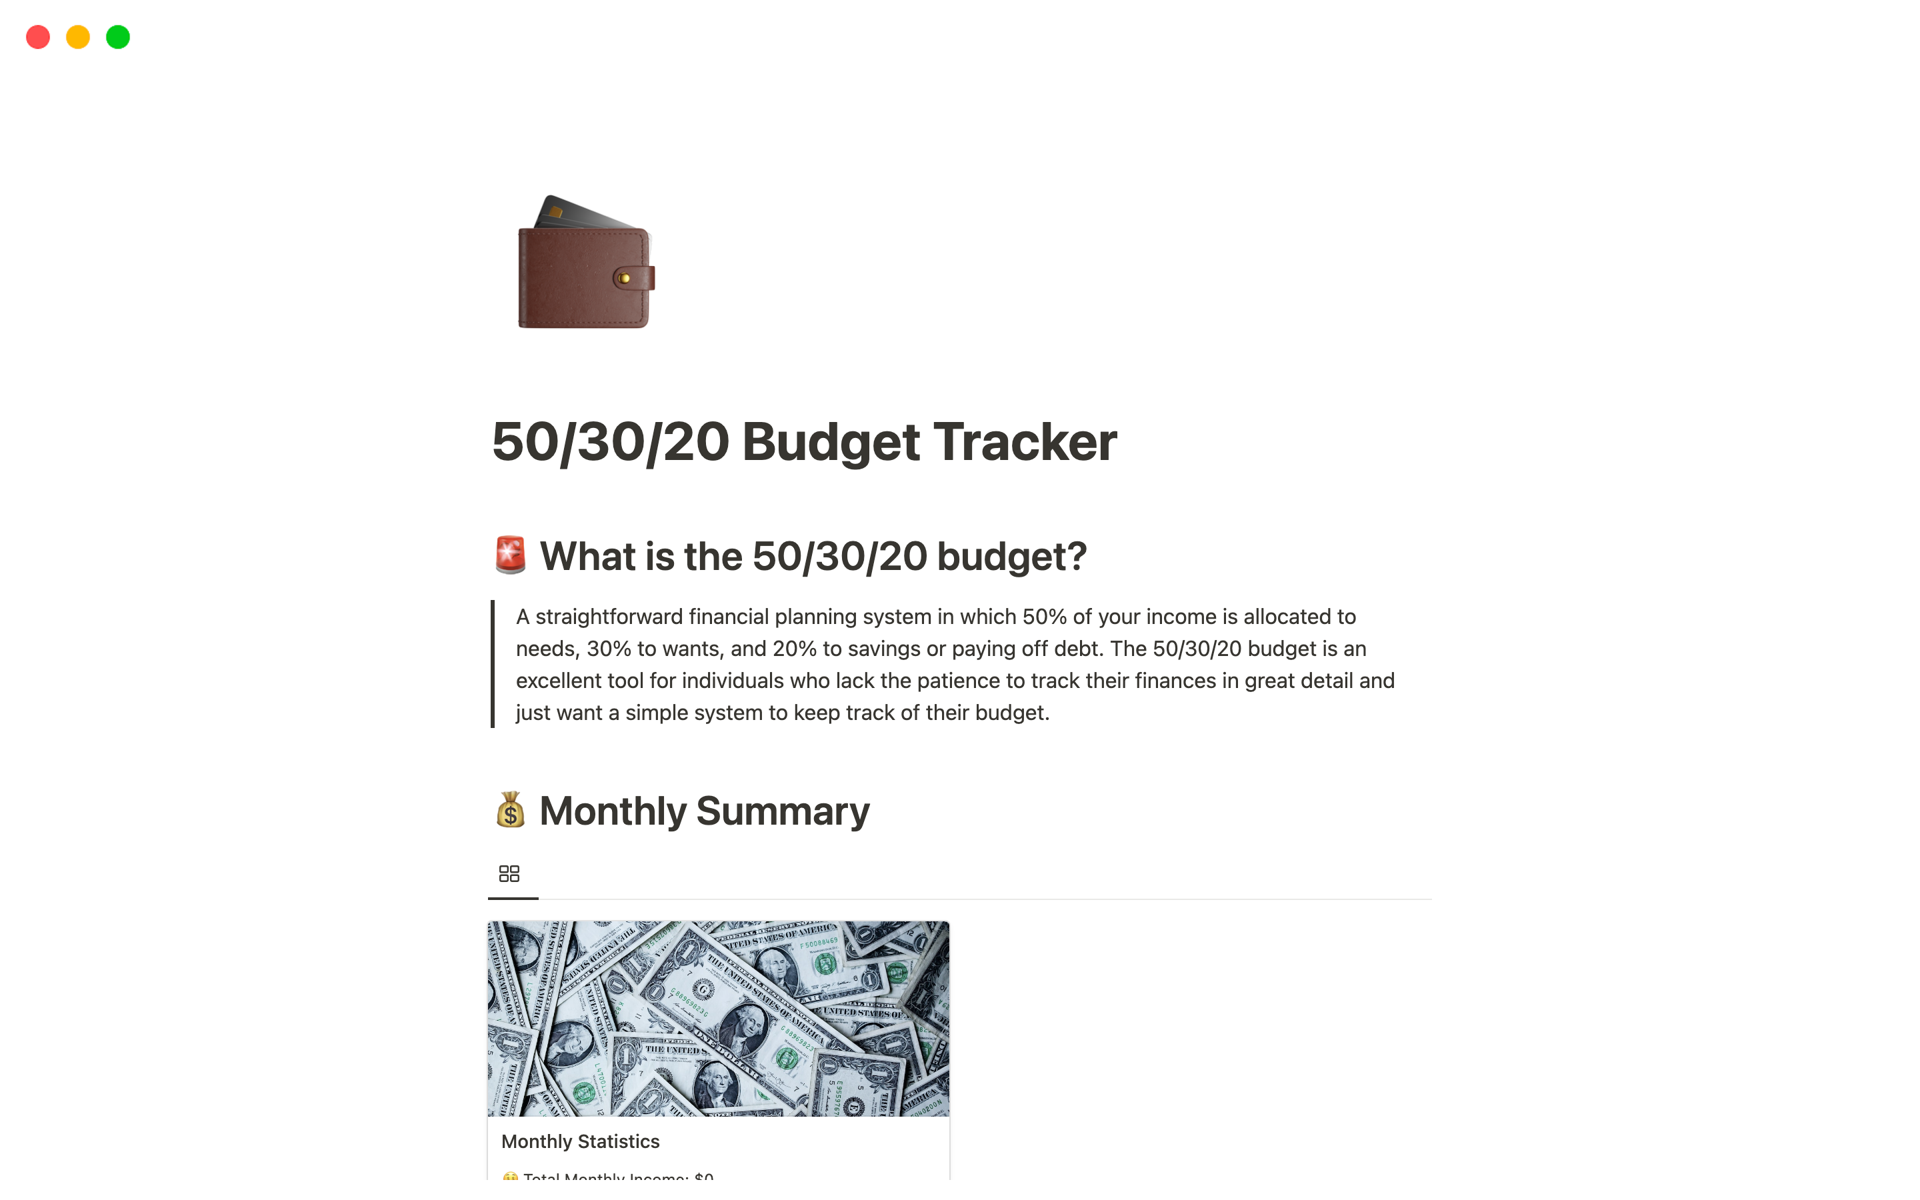 En förhandsgranskning av mallen för 50/30/20 budget tracker